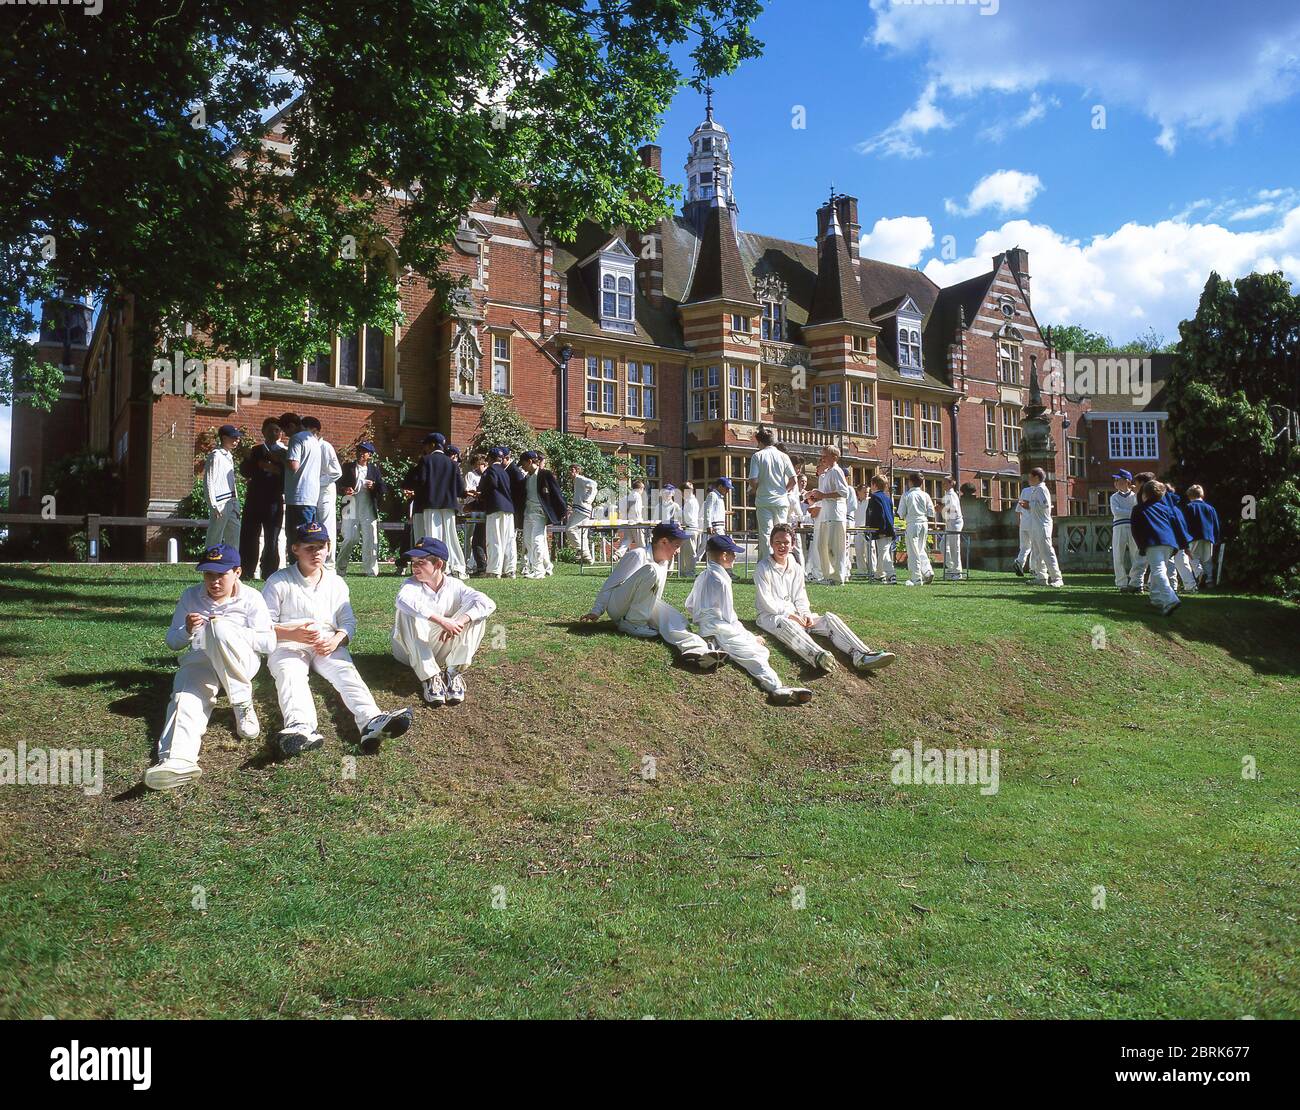 1ère XI équipes de cricket à l'école préparatoire St John's Beaumont, Priest Hill, Old Windsor, Berkshire, Angleterre, Royaume-Uni Banque D'Images